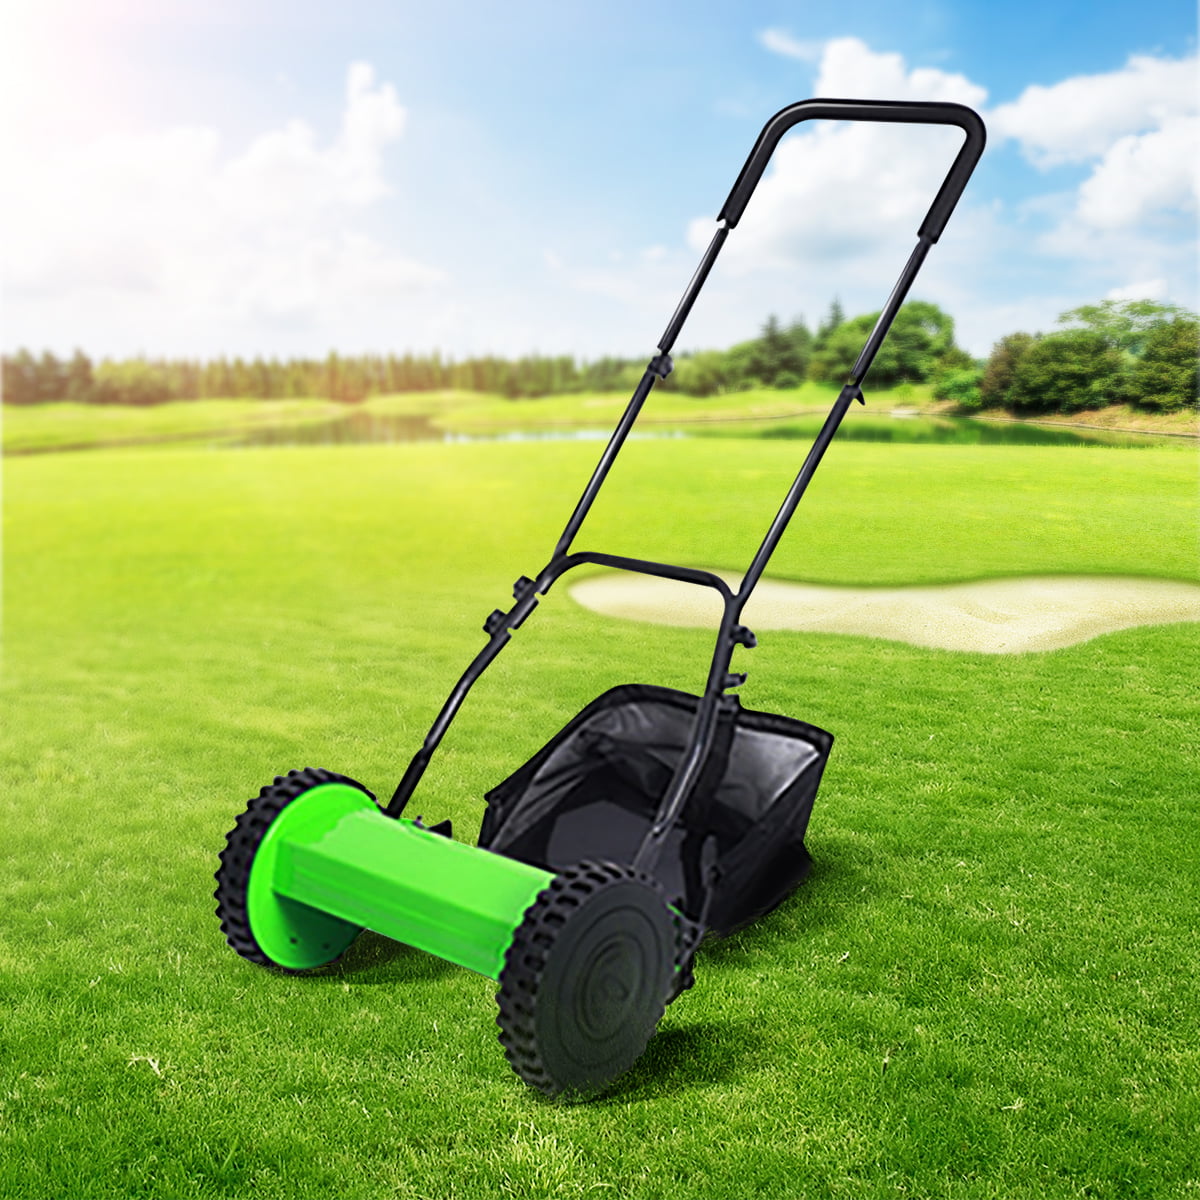 12" Compact Hand Push Lawn Mower Reel Mower No Power Gardening Supplies grass cutter machine grass trimmer